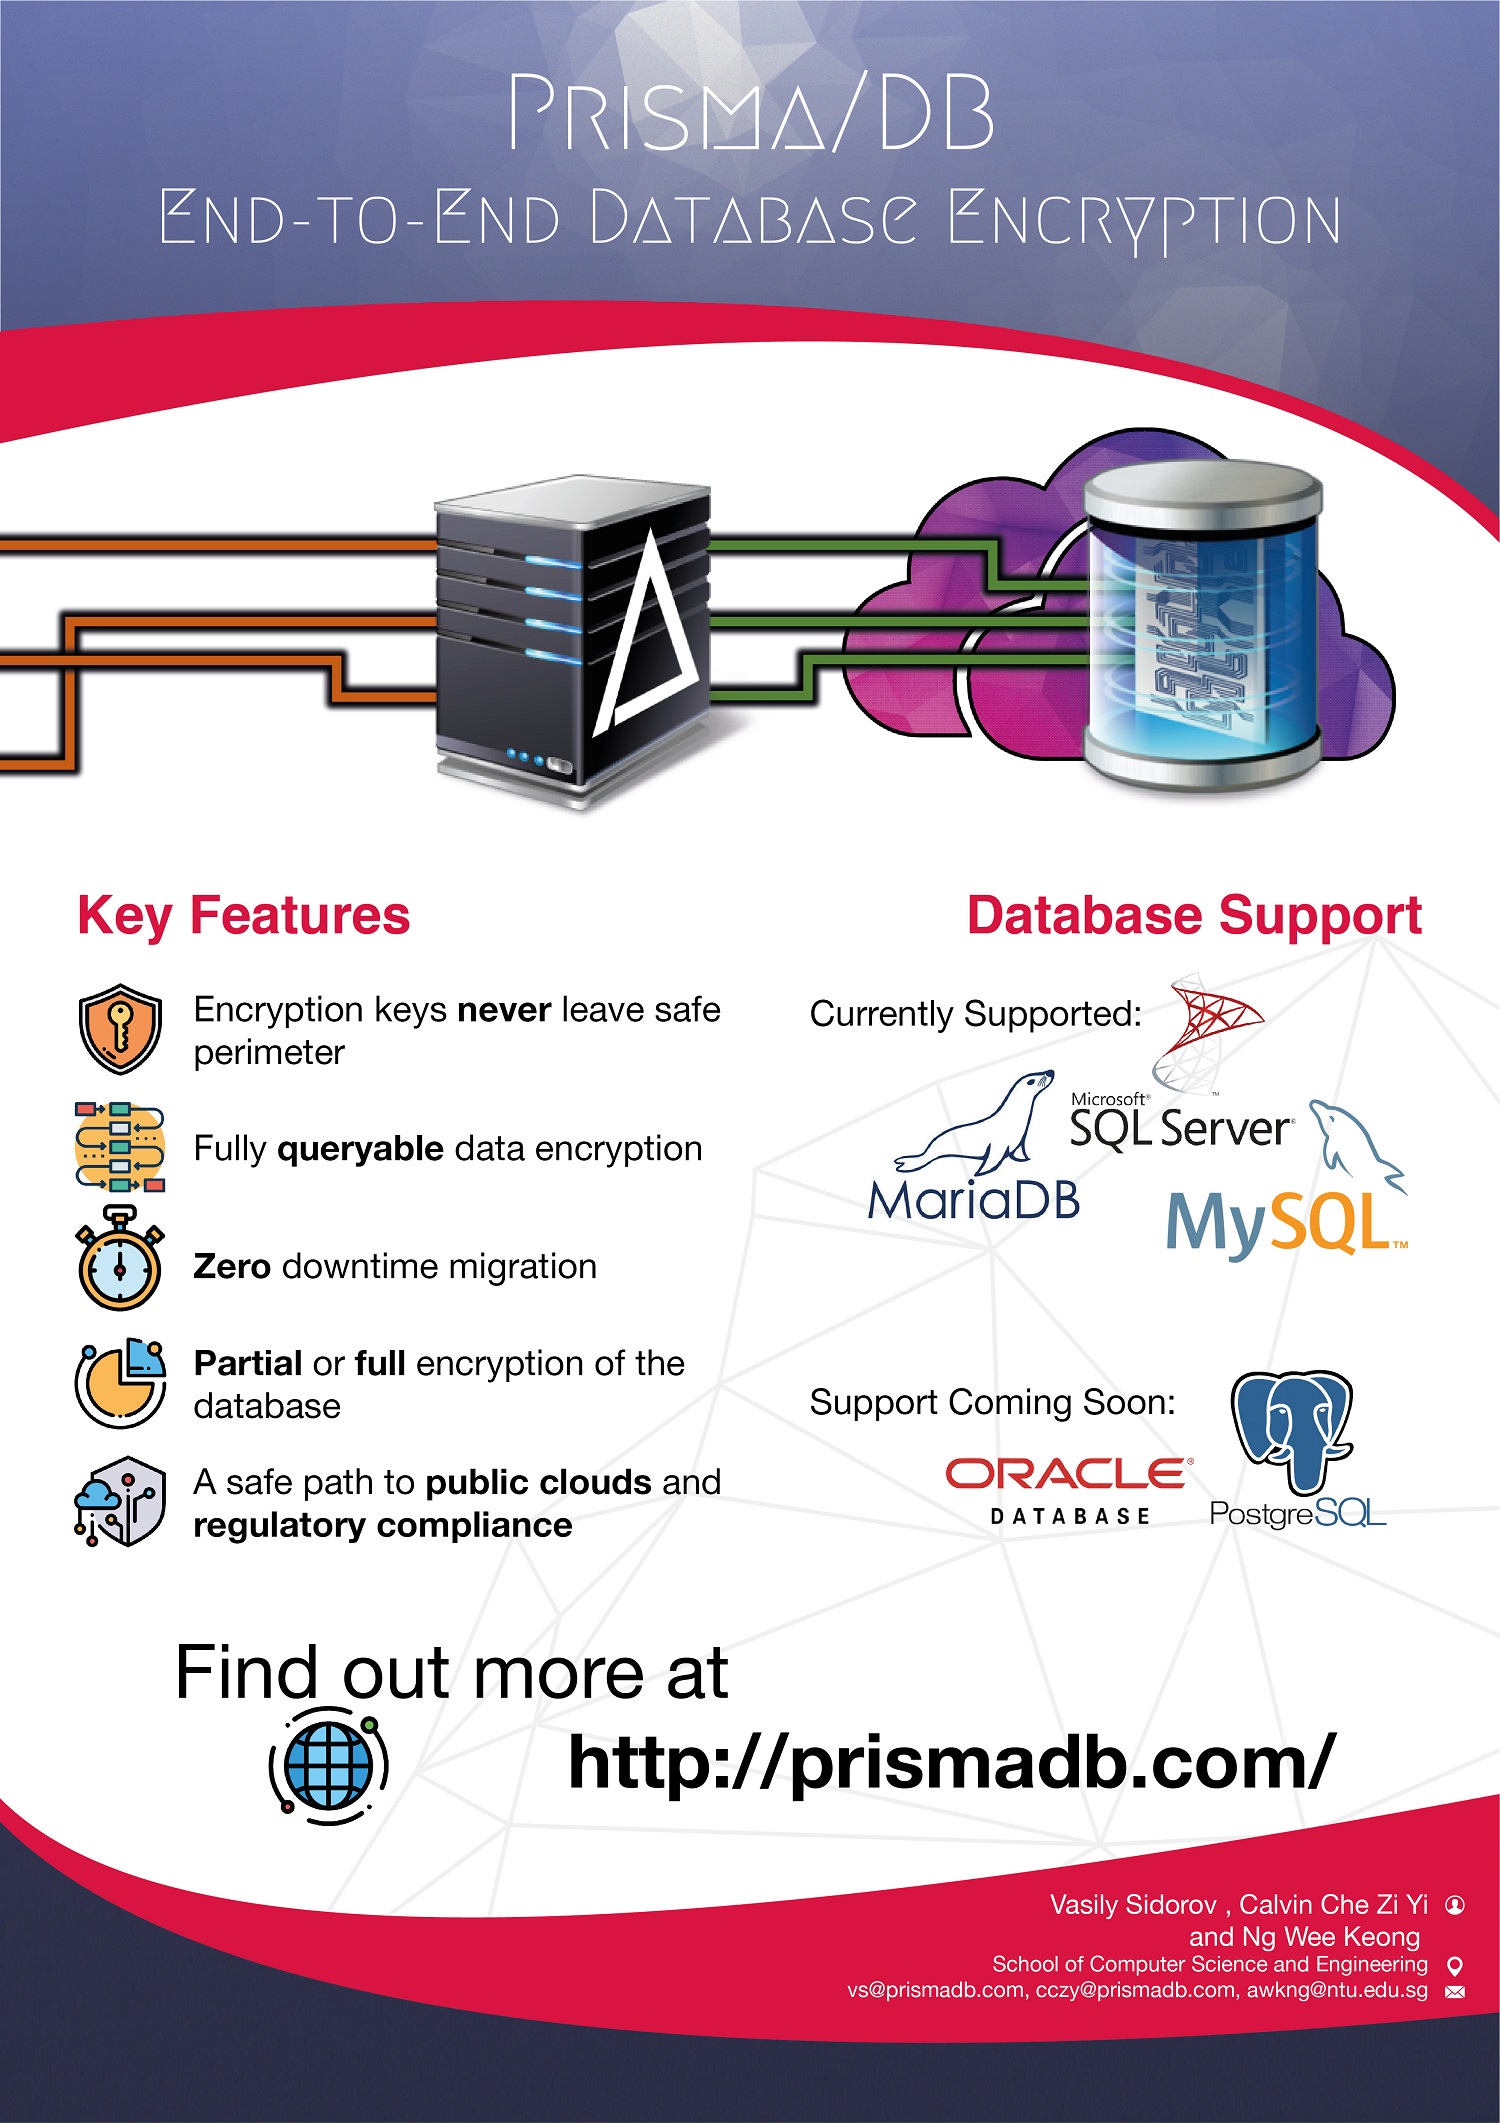 PRISMA/DB End-to-End Database Encryption